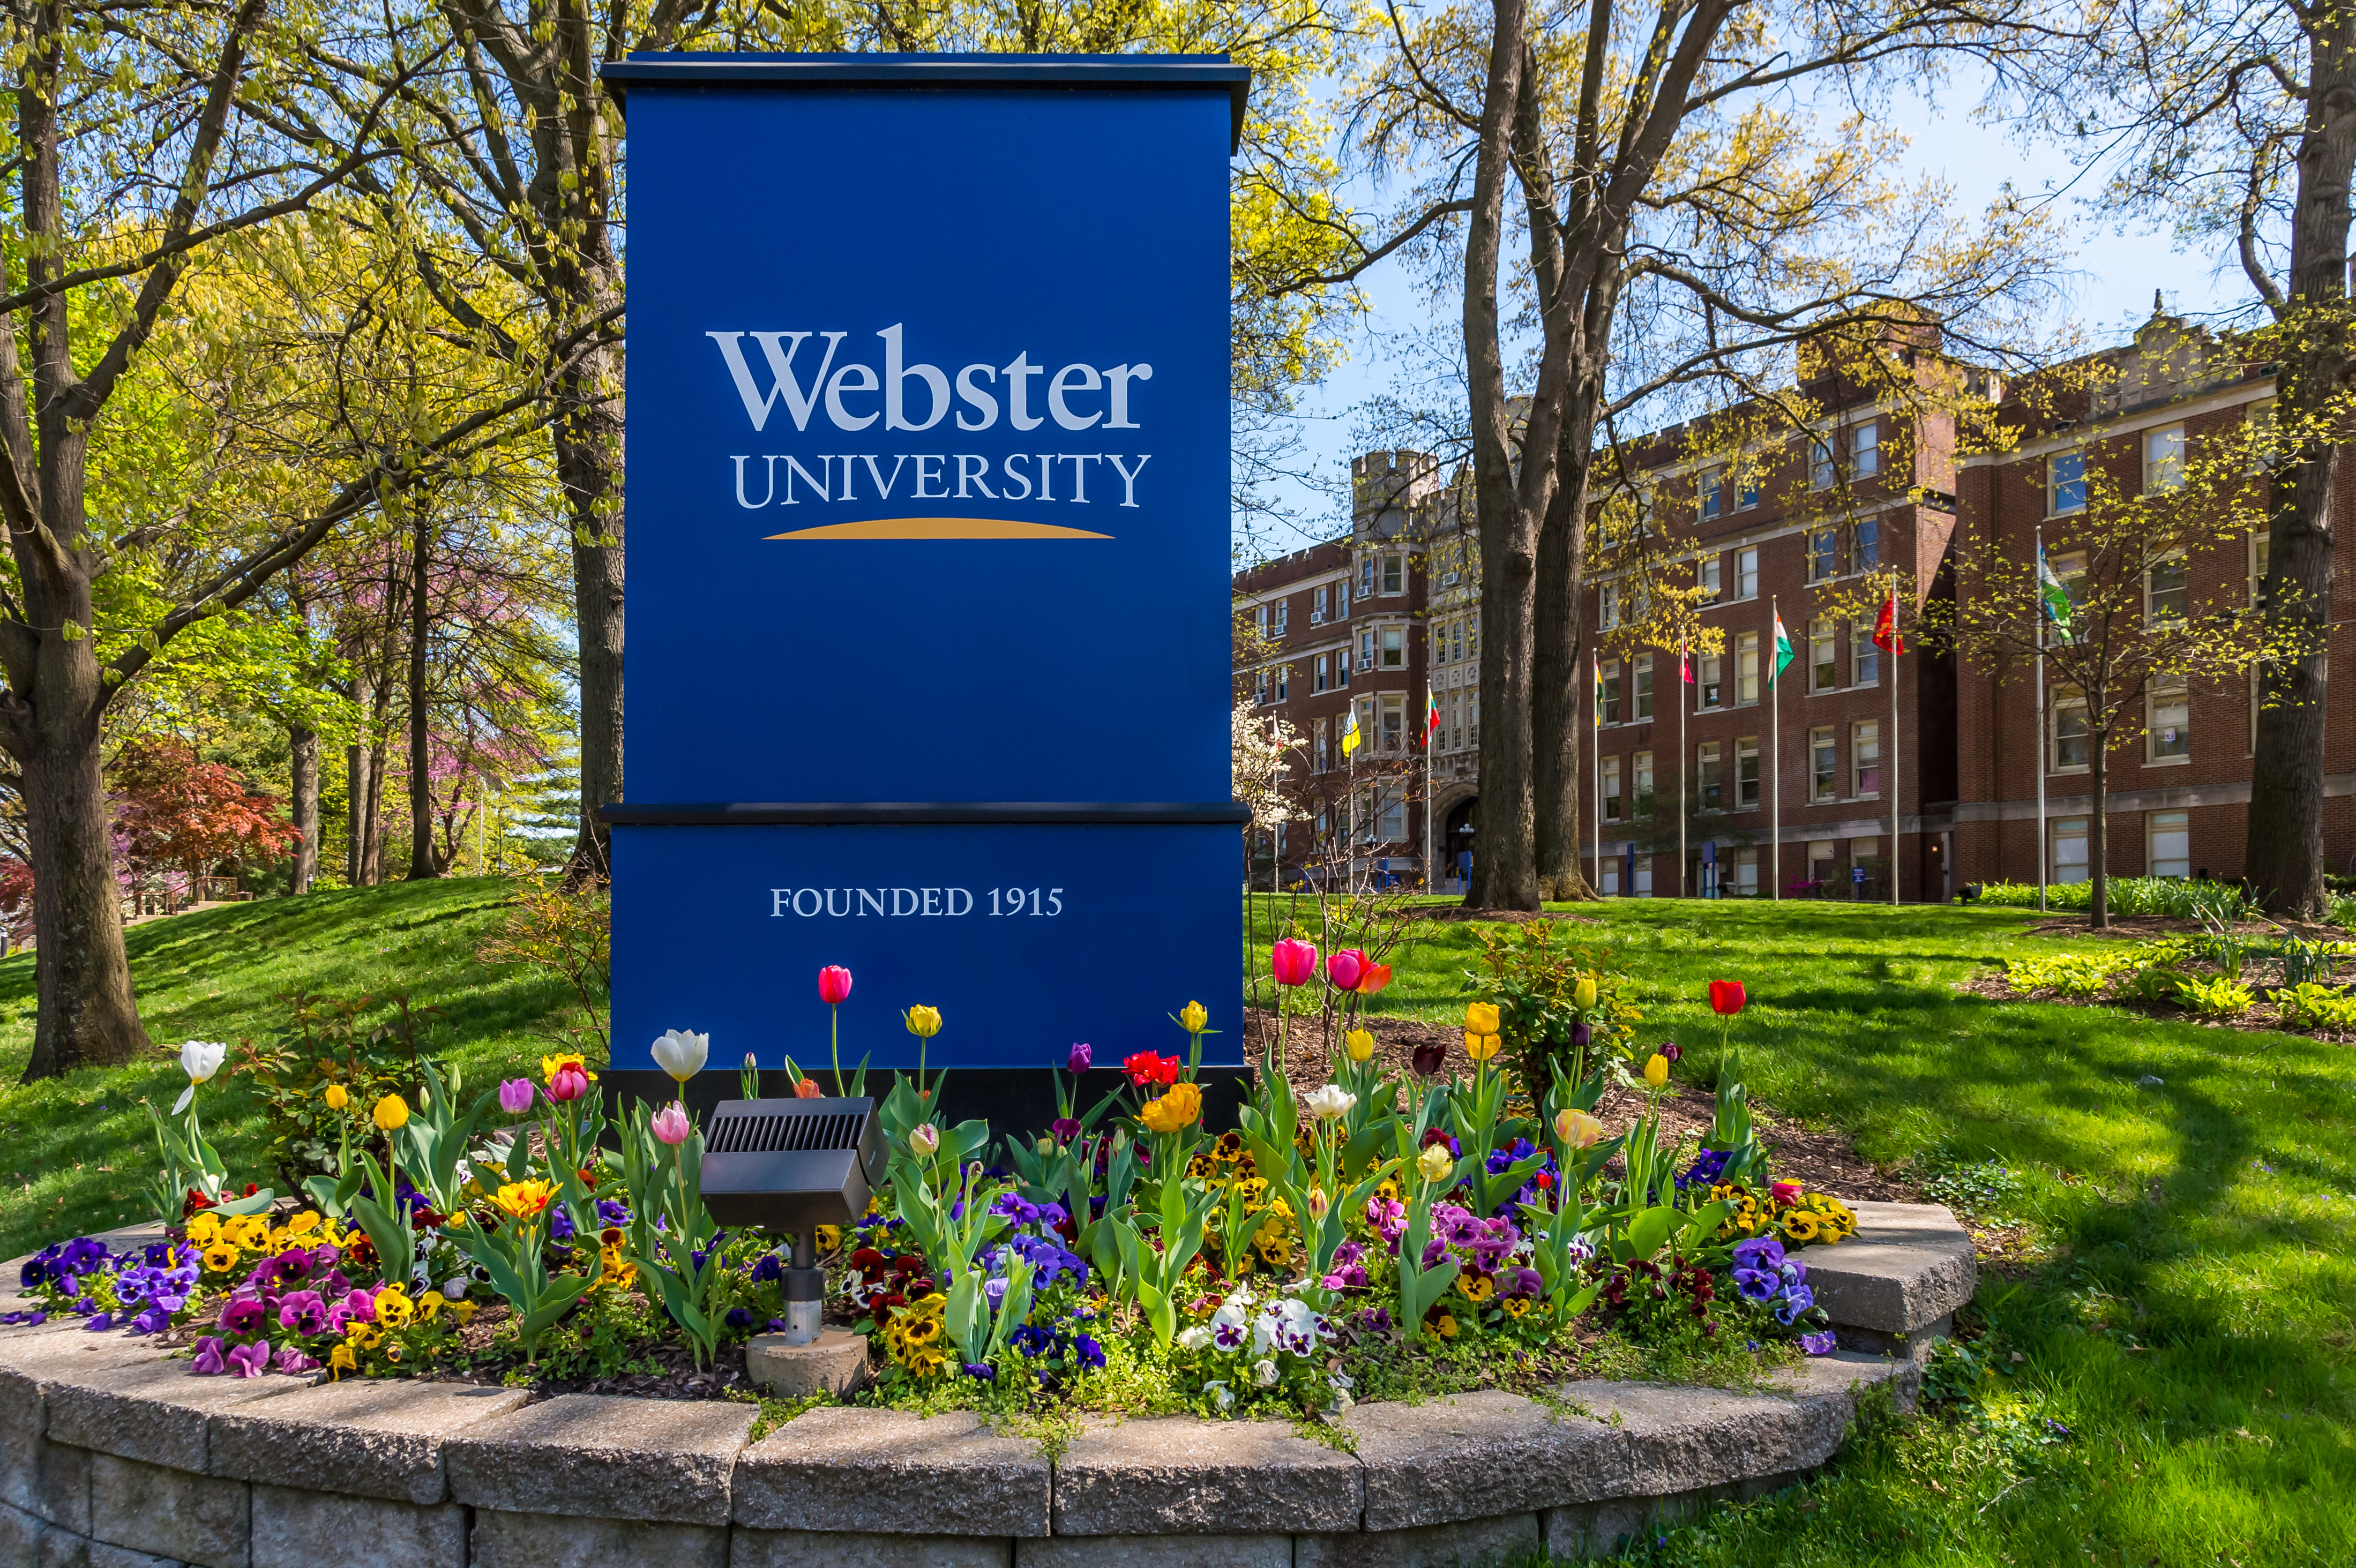 Webster University Entrance Sign in the Spring